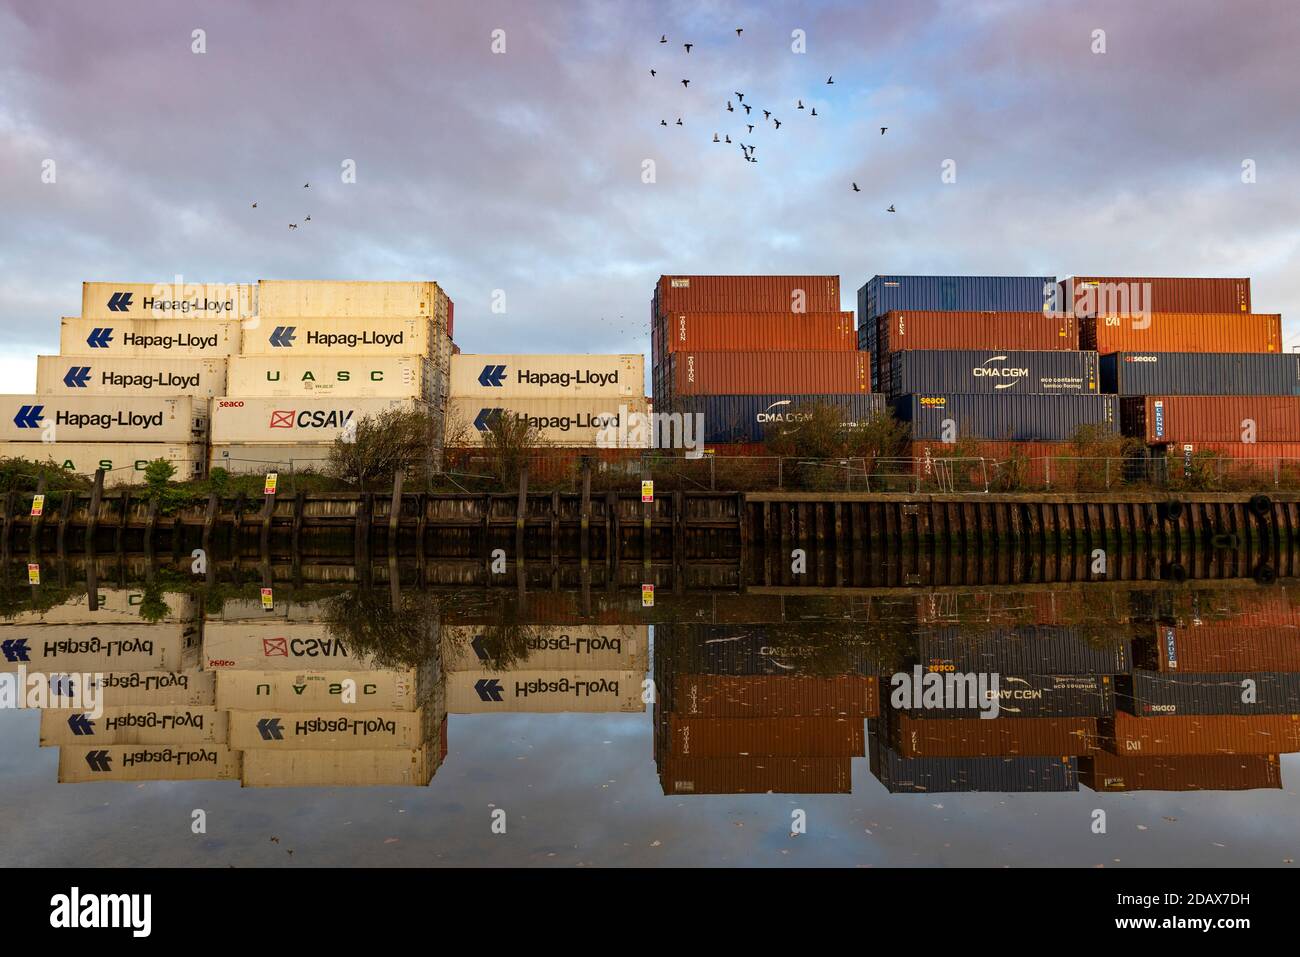 Southampton, Großbritannien, 10. November 2020. Vögel fliegen über dutzende intermodale Farbcontainer, die an den Docks von Southampton übereinander gestapelt sind. Die Frachtcontainer, die mit verschiedenen Reederei-Namen und Logos geschmückt sind, spiegeln sich in den stillen Gewässern des River Test als Spiegelbild wider. Stockfoto